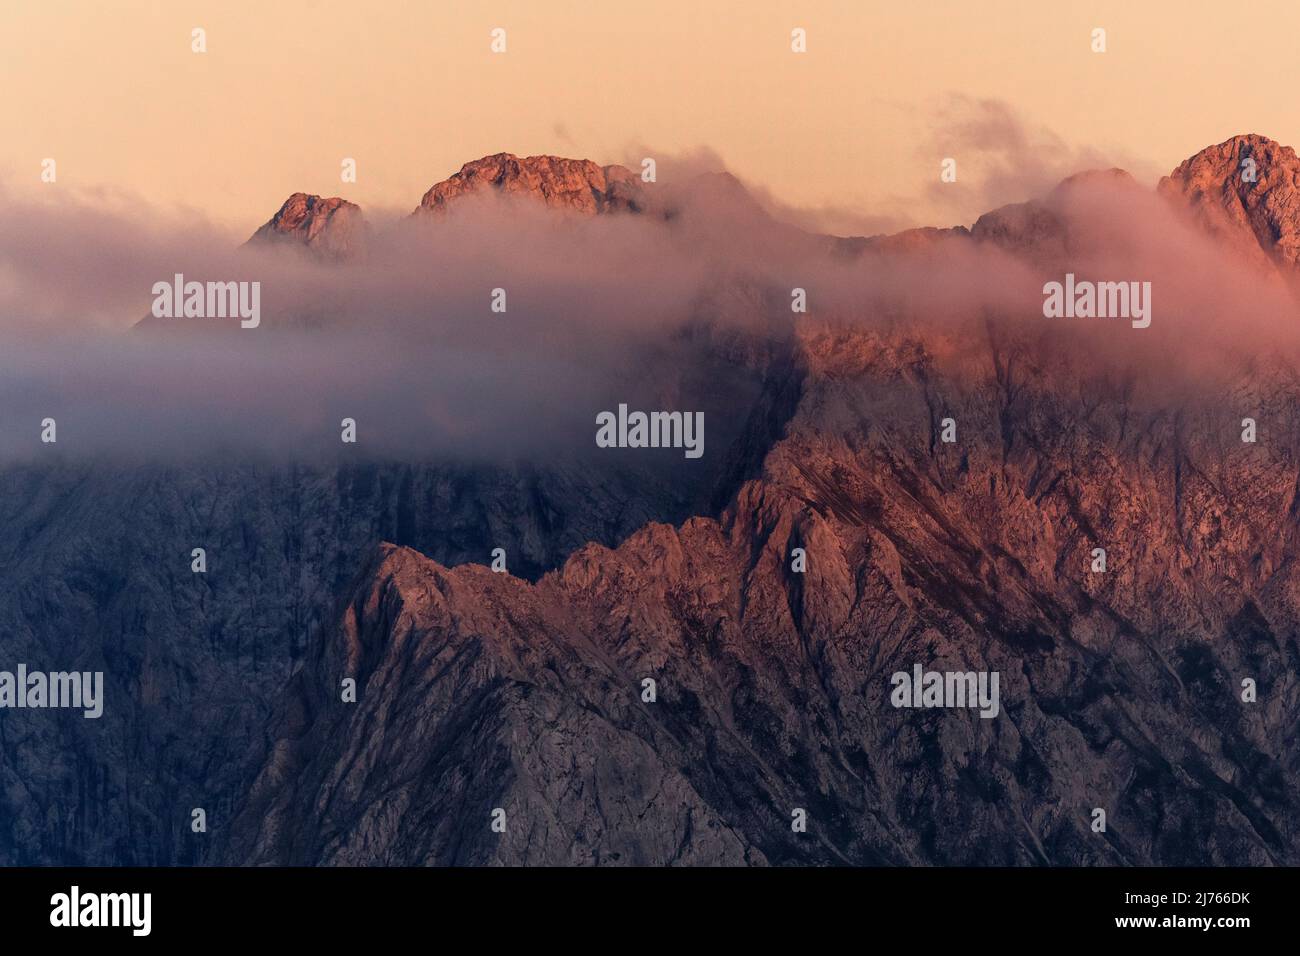 Die Schlichtenkarspitze und die Steinkarspitze leuchten rot, alpenglow kurz vor Sonnenuntergang im Karwendel, einem Teil der Alpen. Das Plankengestein wird nur durch eine leichte Wolkenschicht aufgeweicht. Stockfoto